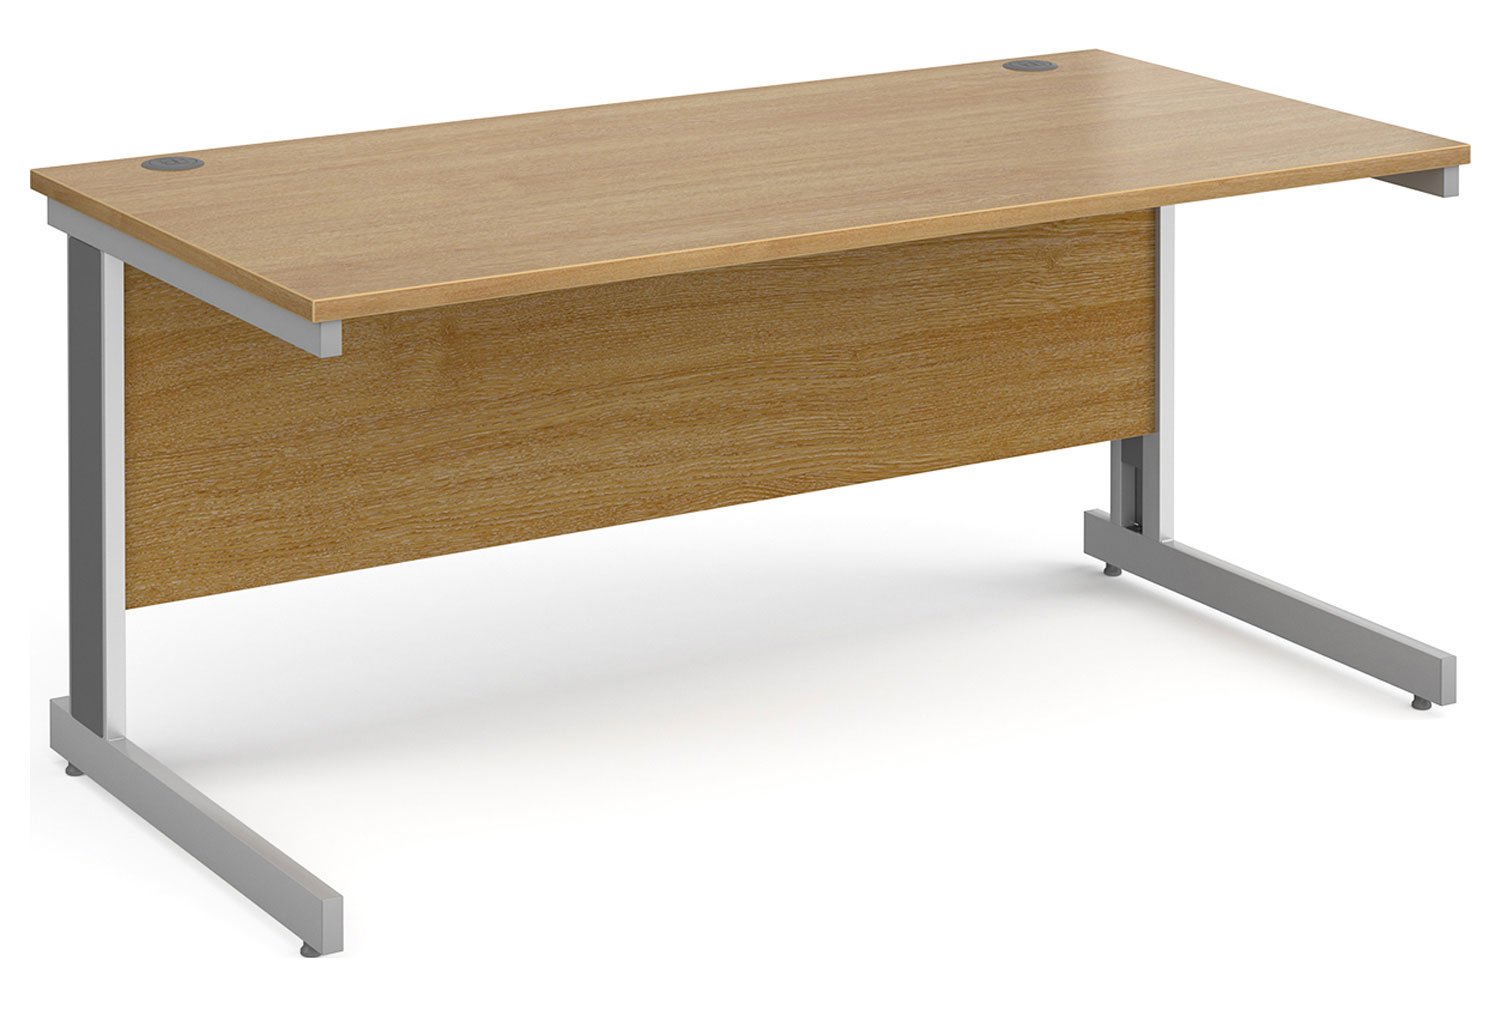 Tully Deluxe Rectangular Office Desk, 160wx80dx73h (cm), Oak